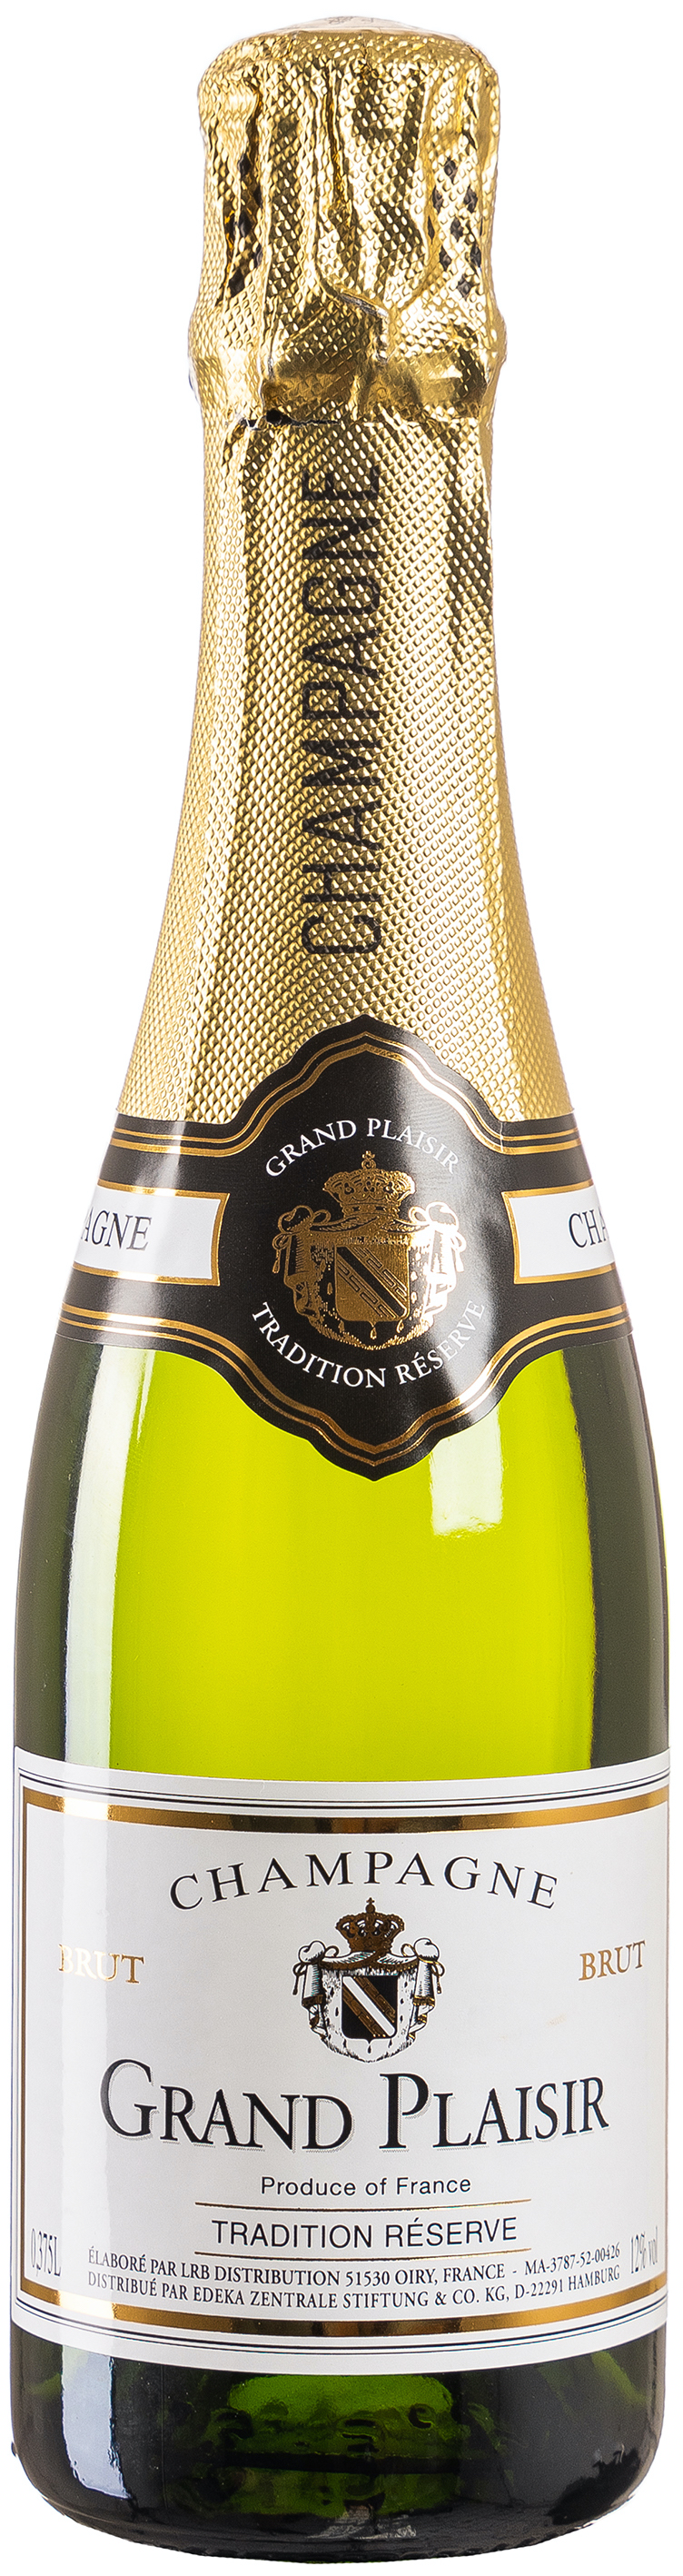 Grand Plaisir Champagne 12% vol. 0,375L